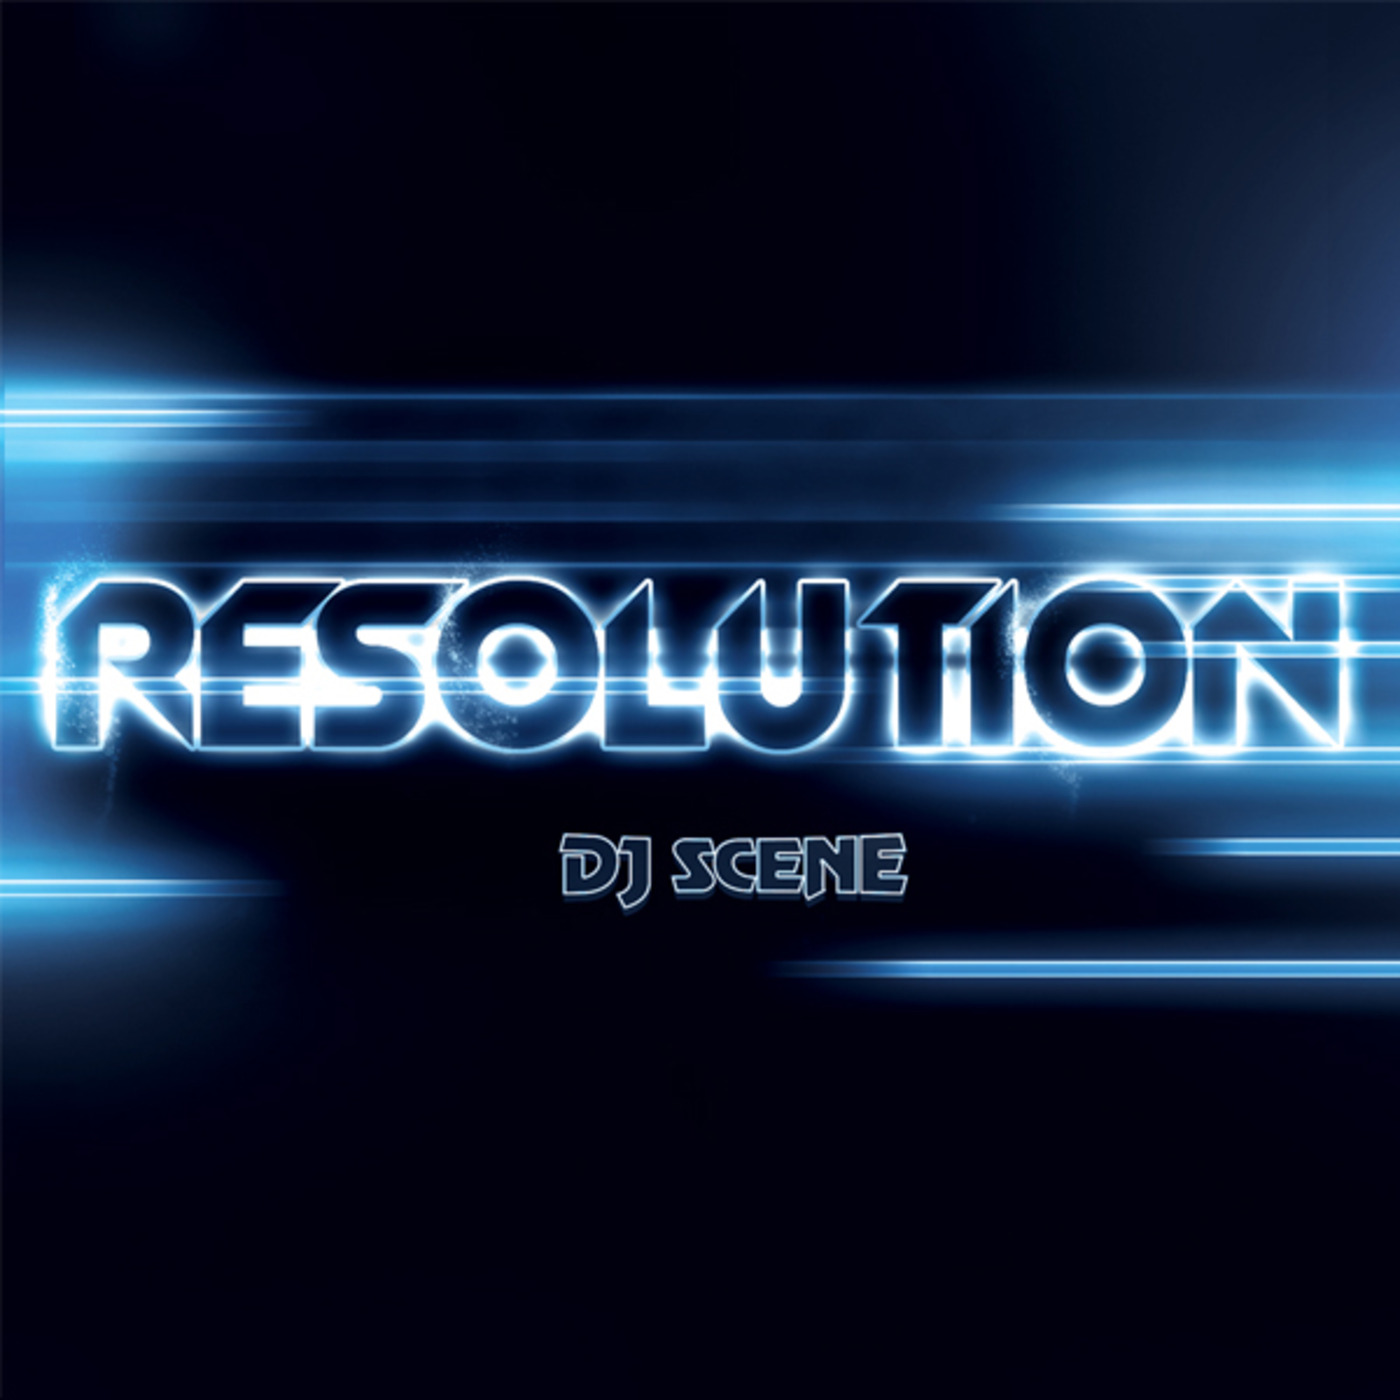 DJ Scene - Resolution